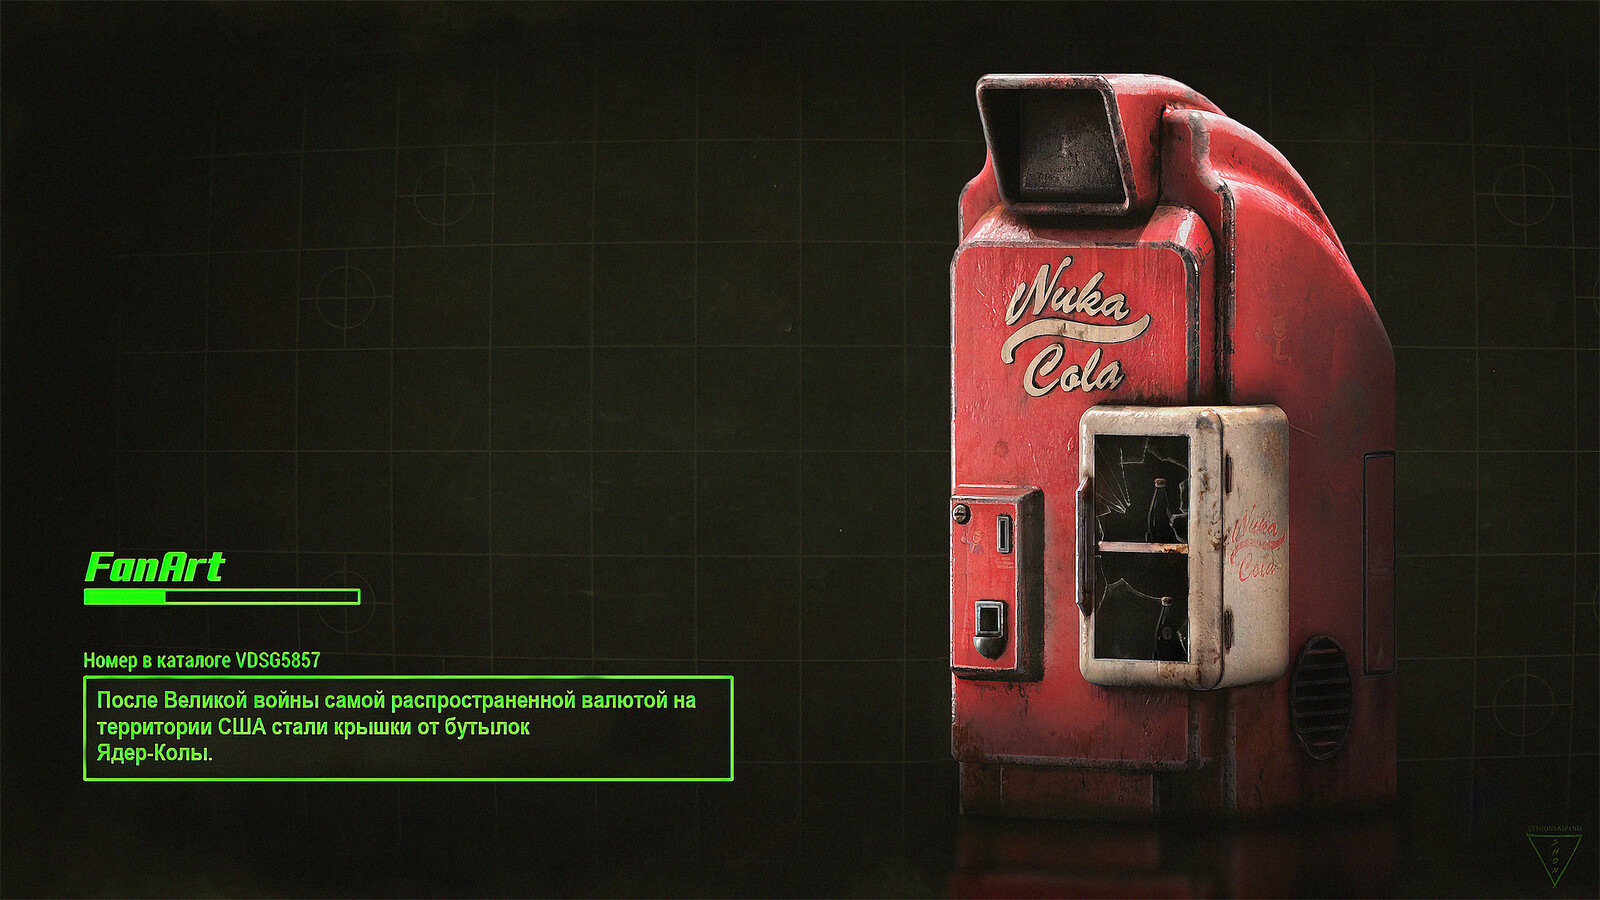 Fallout 4 nuka world завод по розливу напитков фото 80